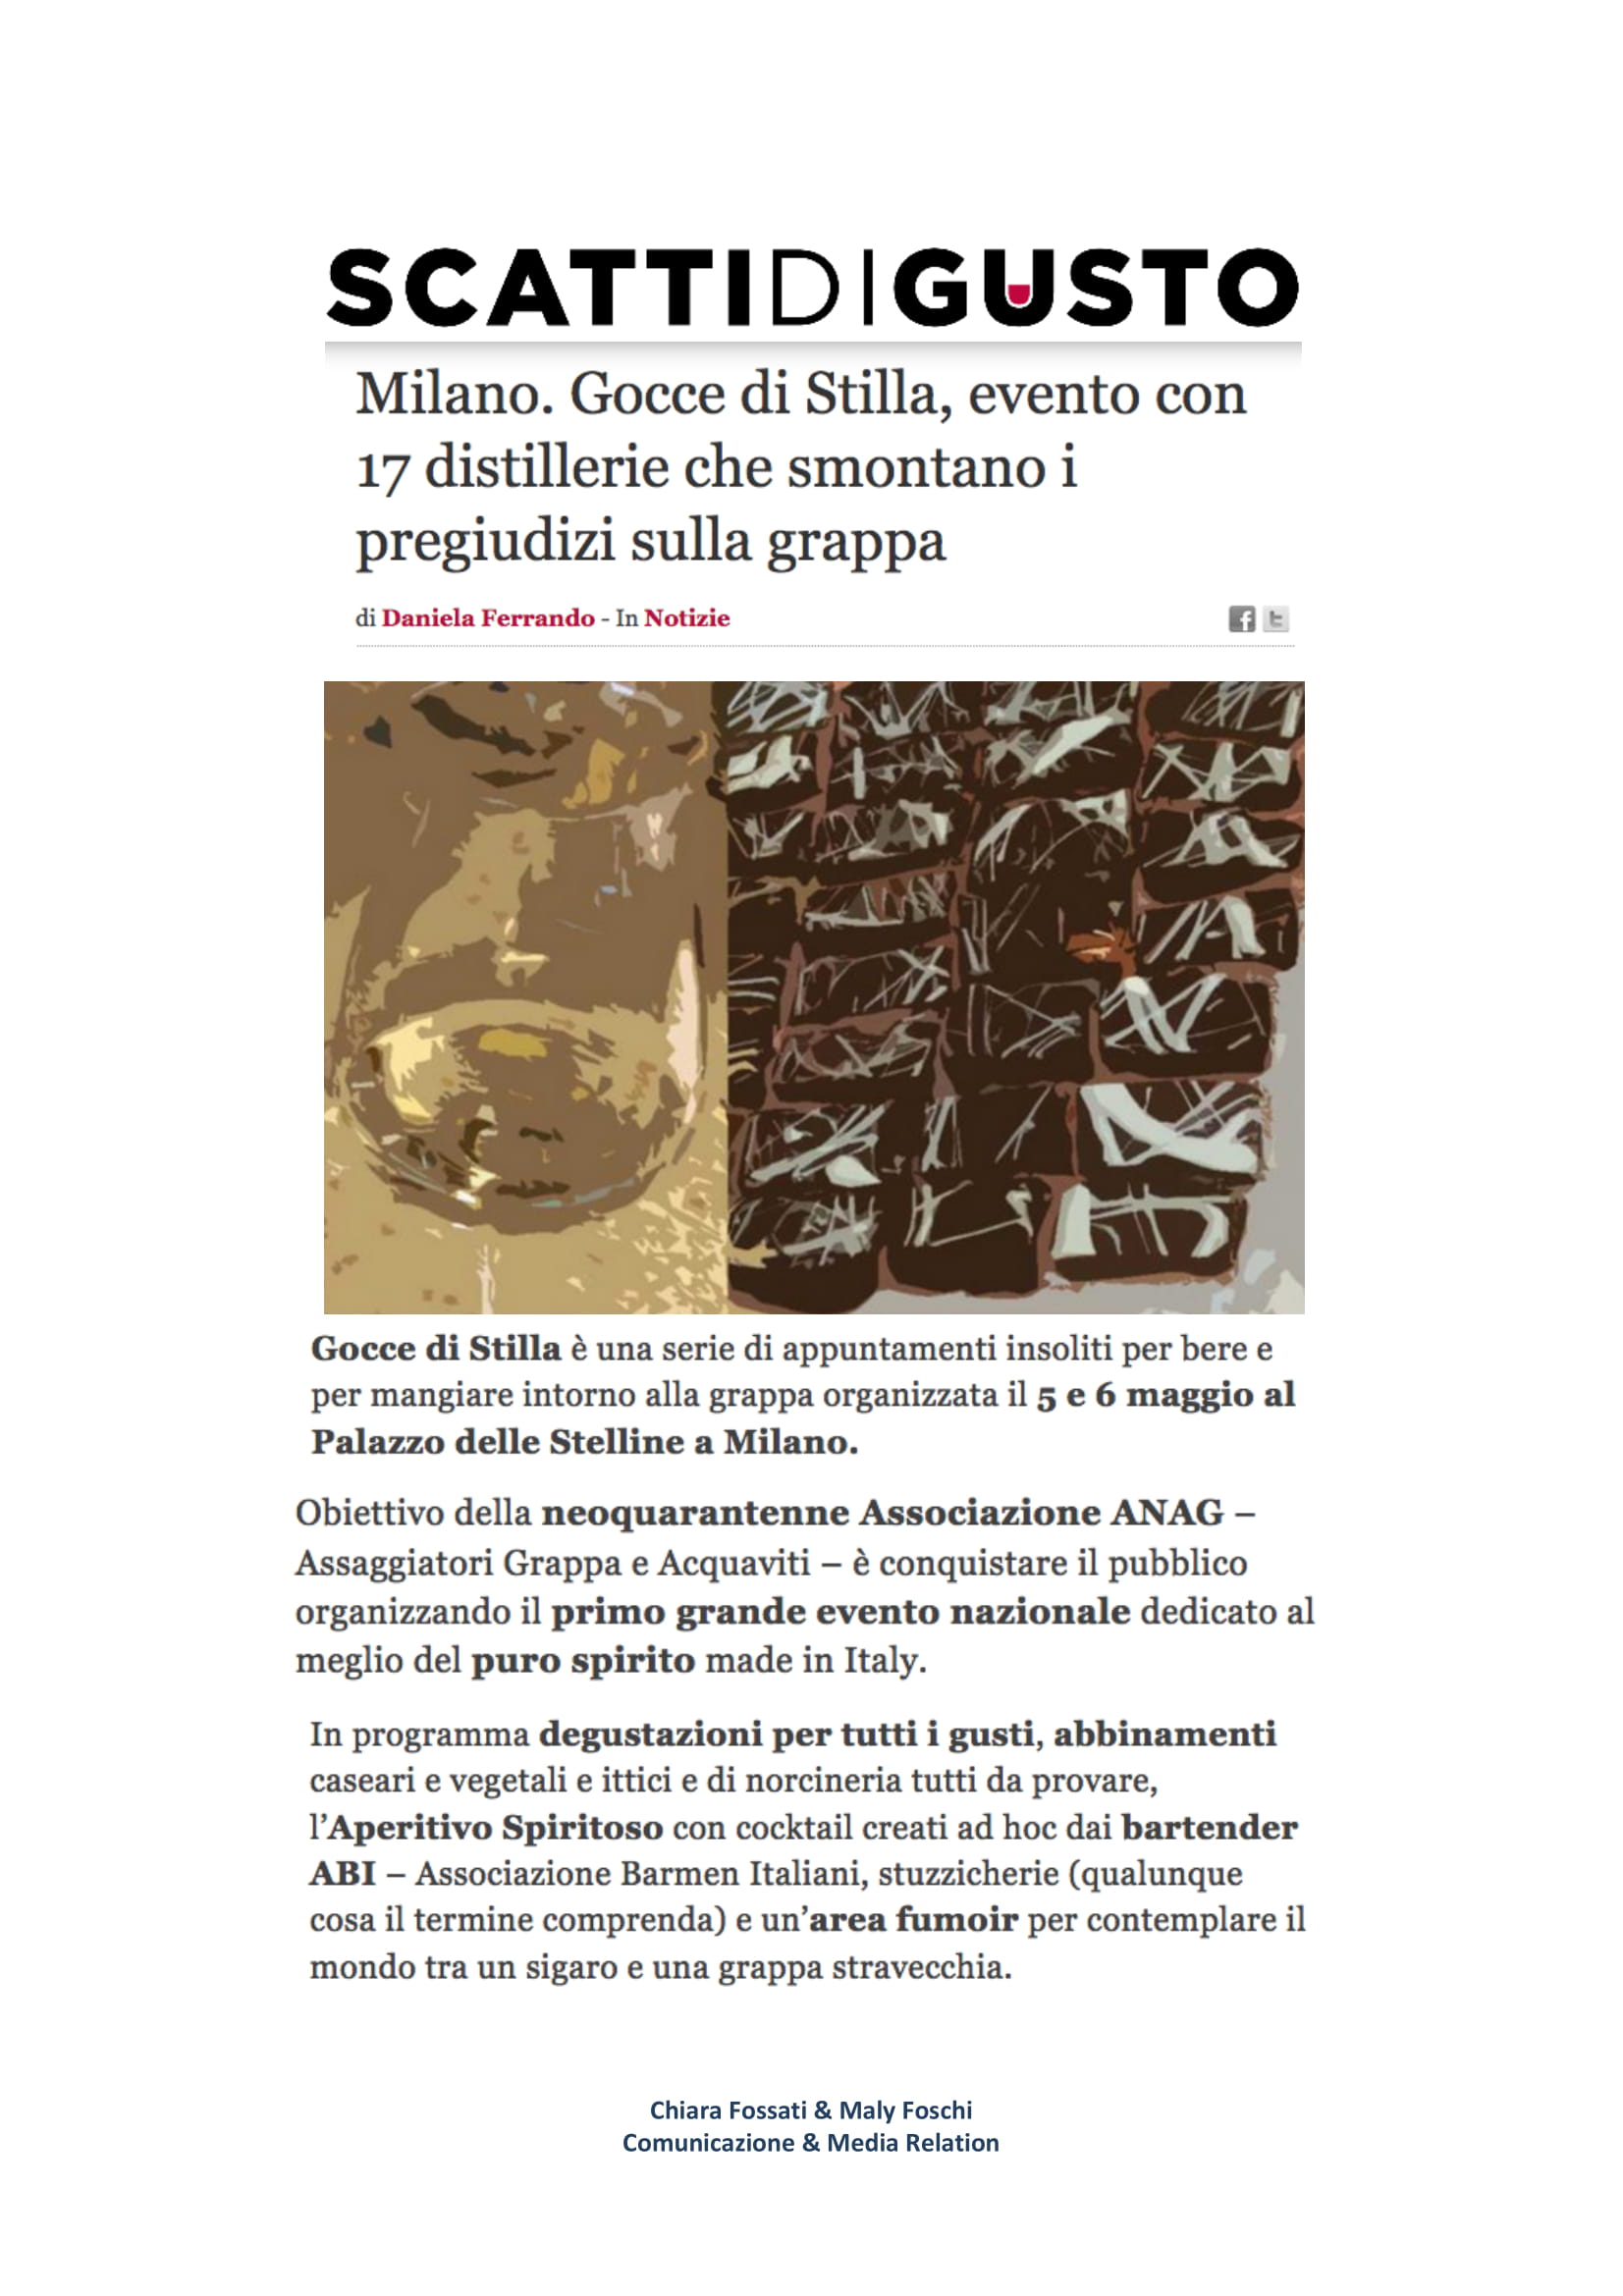 2018 aprile 23: Milano. Gocce di Stilla, evento con 17 distillerie che smontano i pregiudizi sulla grappa